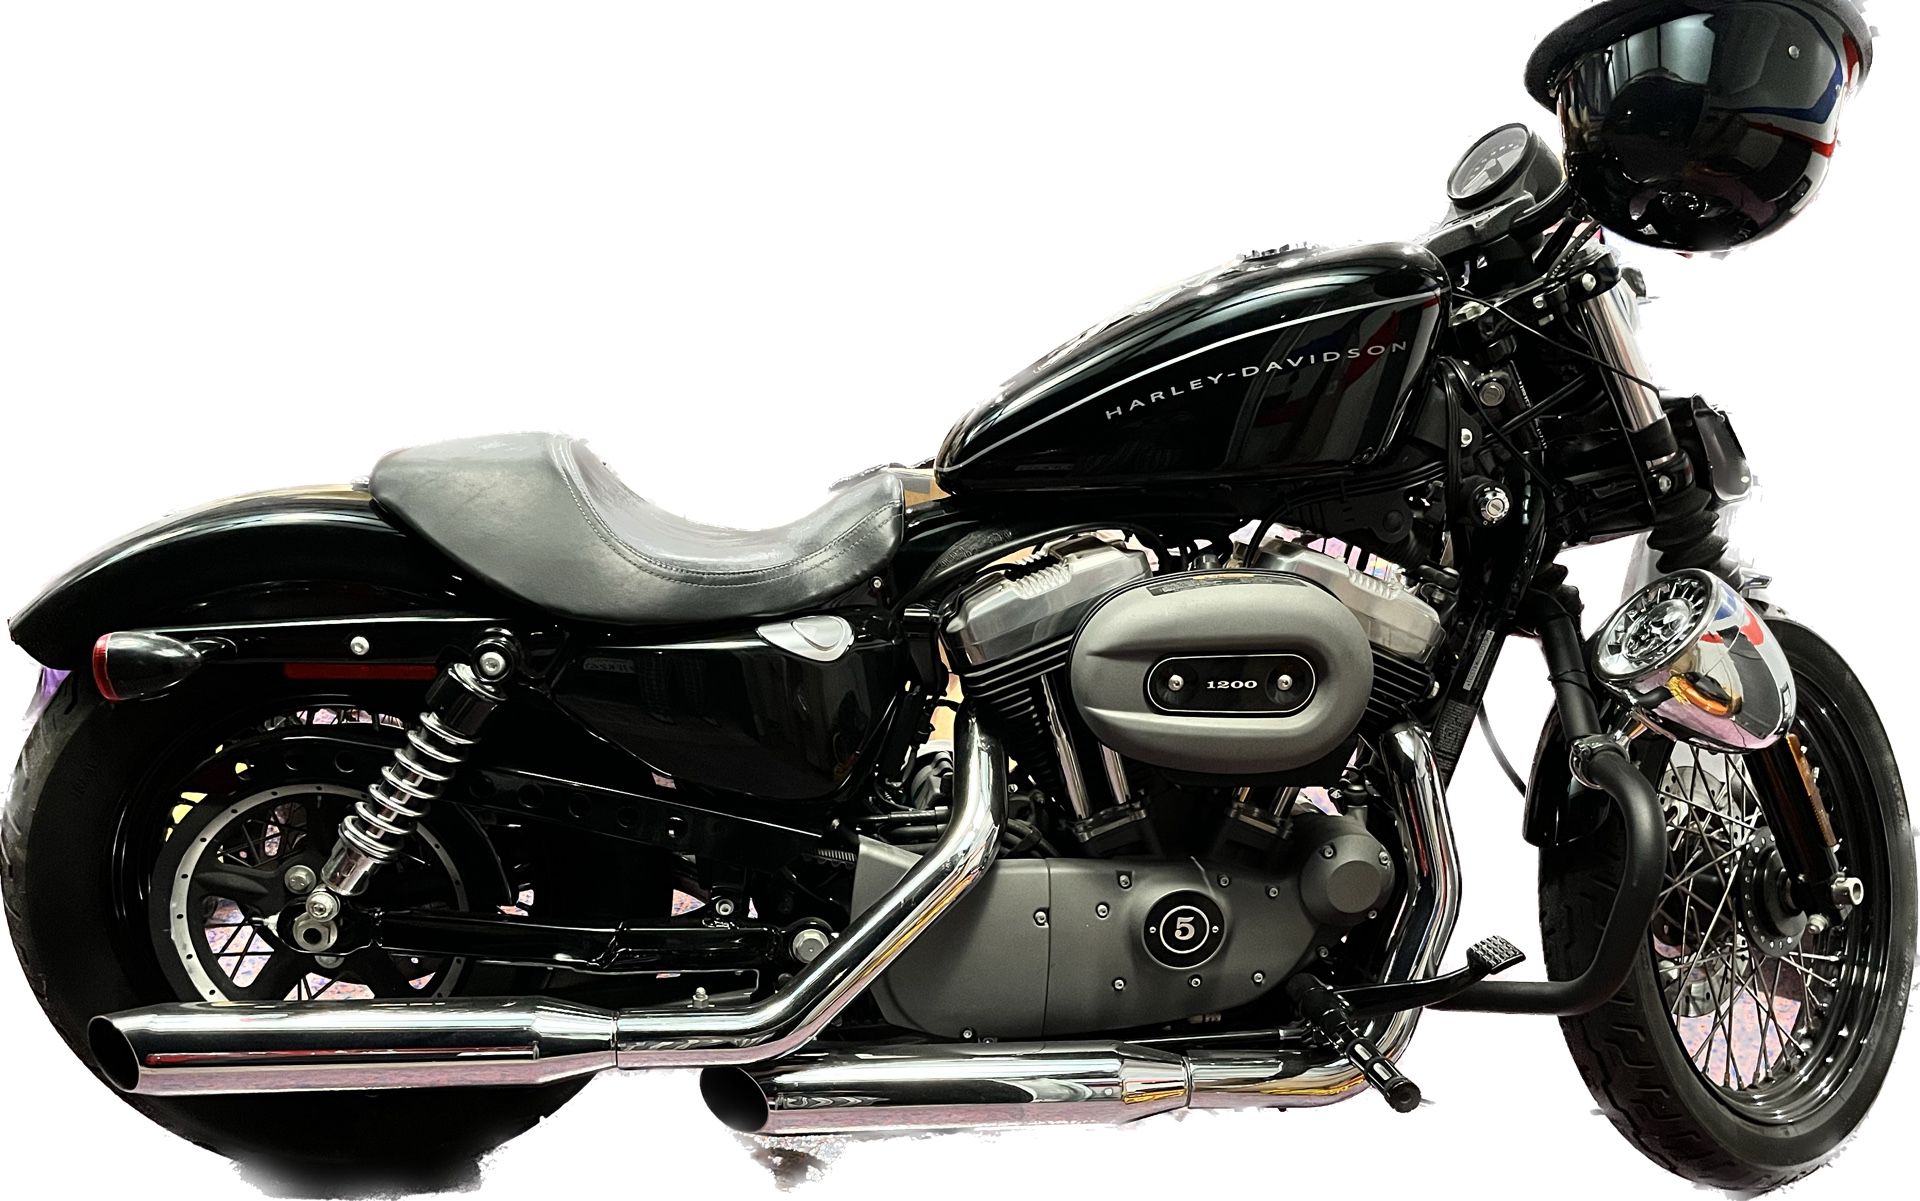 2009 Harley Davidson 1200 Nightster